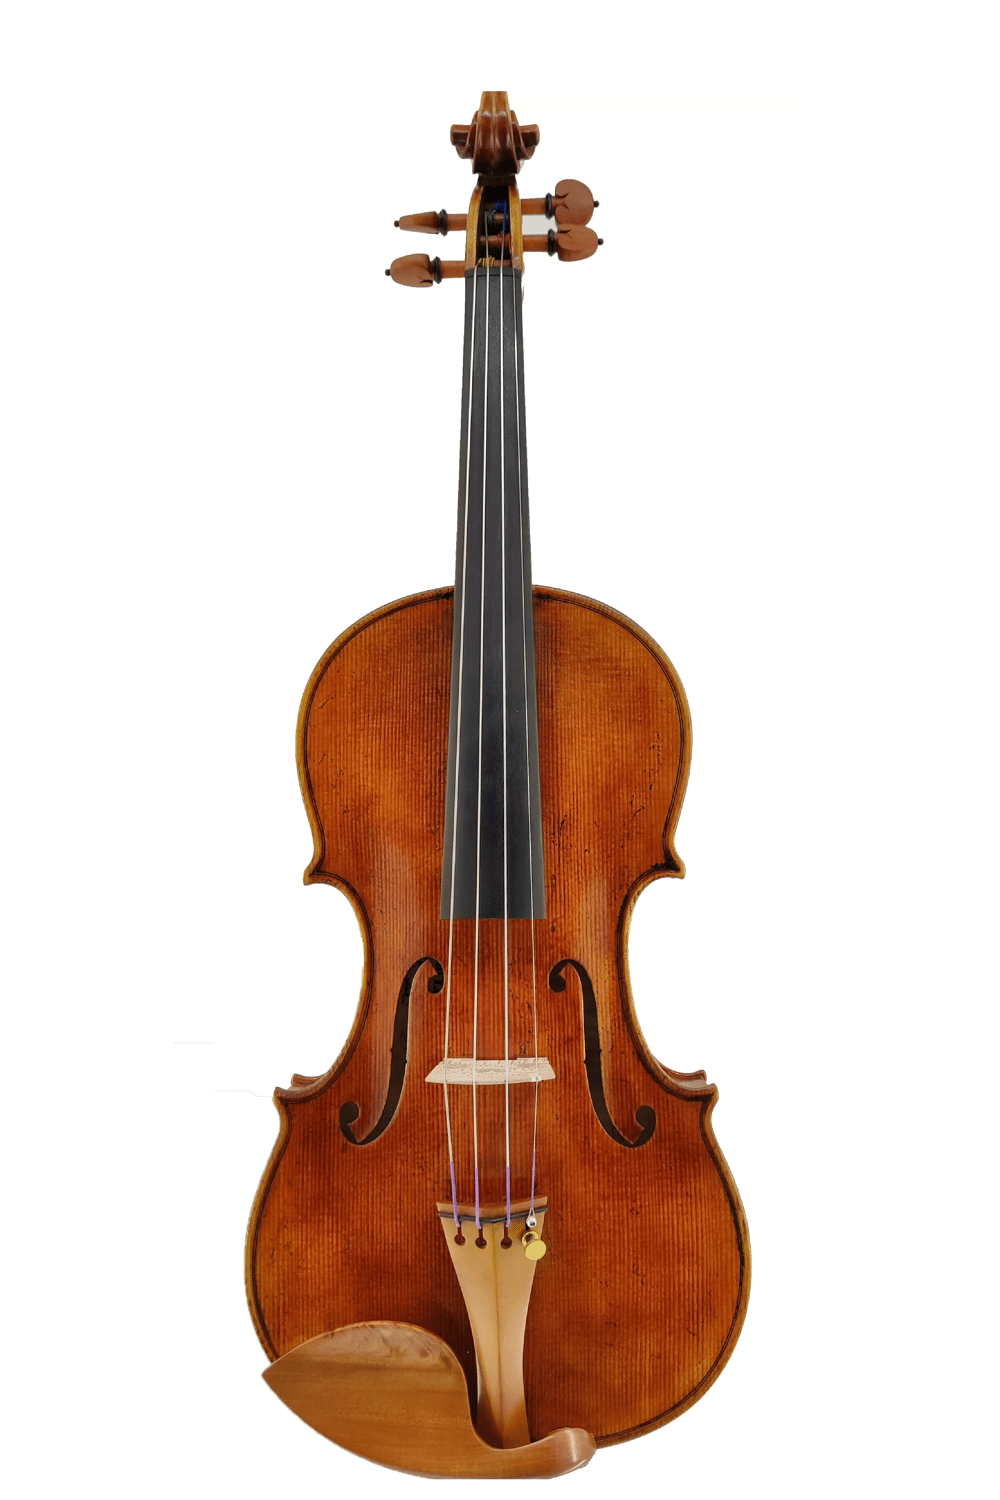 Catalog - Scott Cao Violins